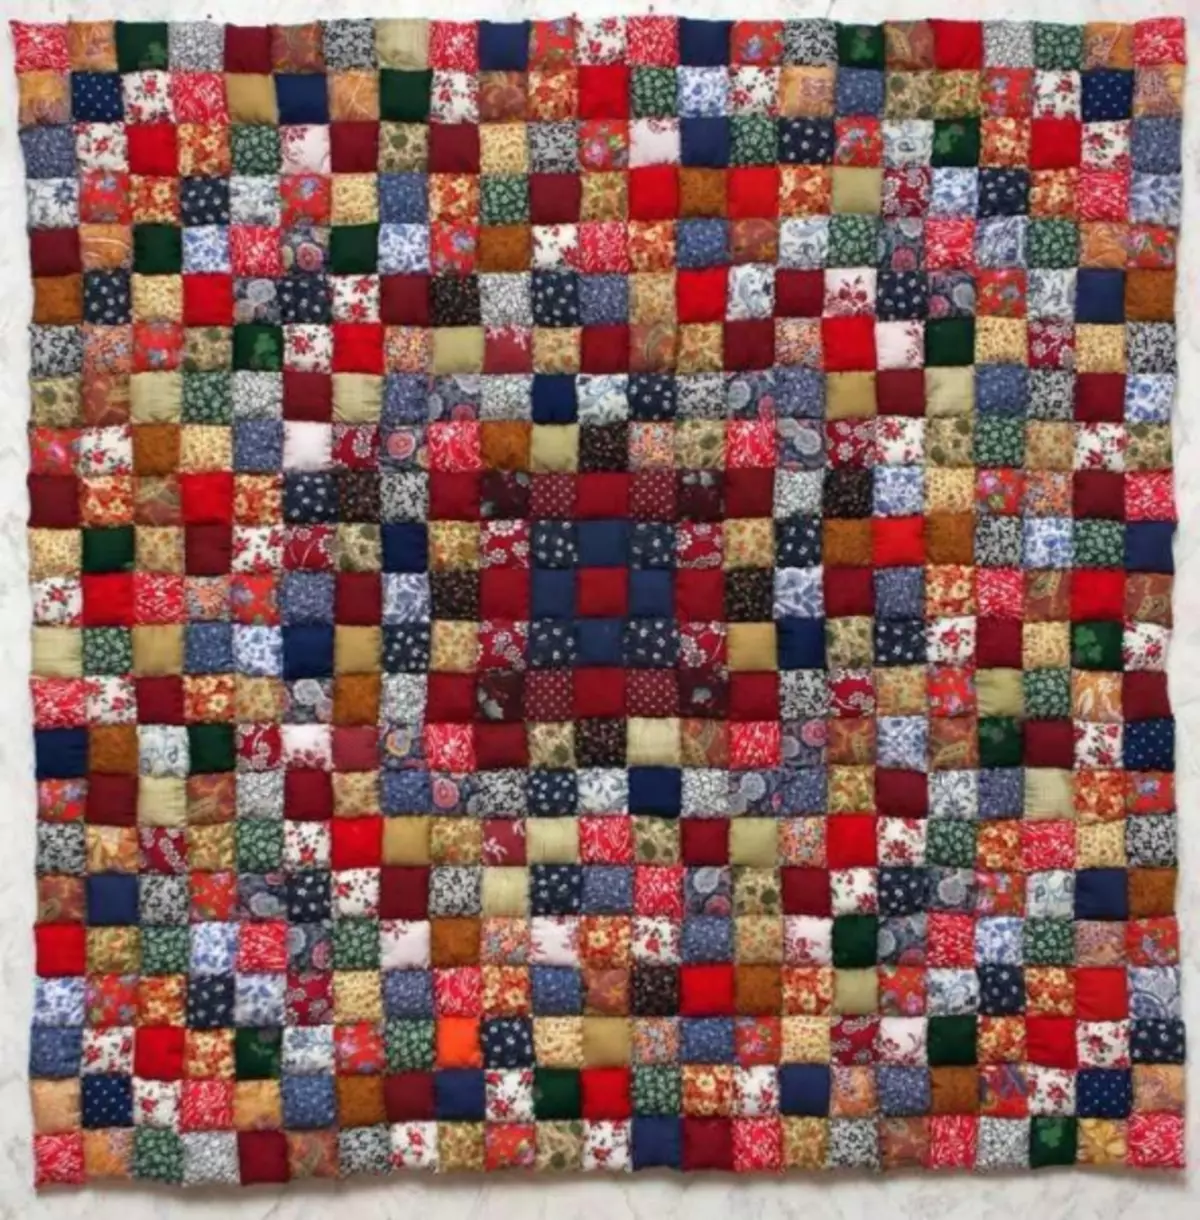 Zojambula patchwork: Patchork ndi manja anu, zithunzi papepala, pulogalamu ya mug, chabwino, zithunzi, makanema apainiya